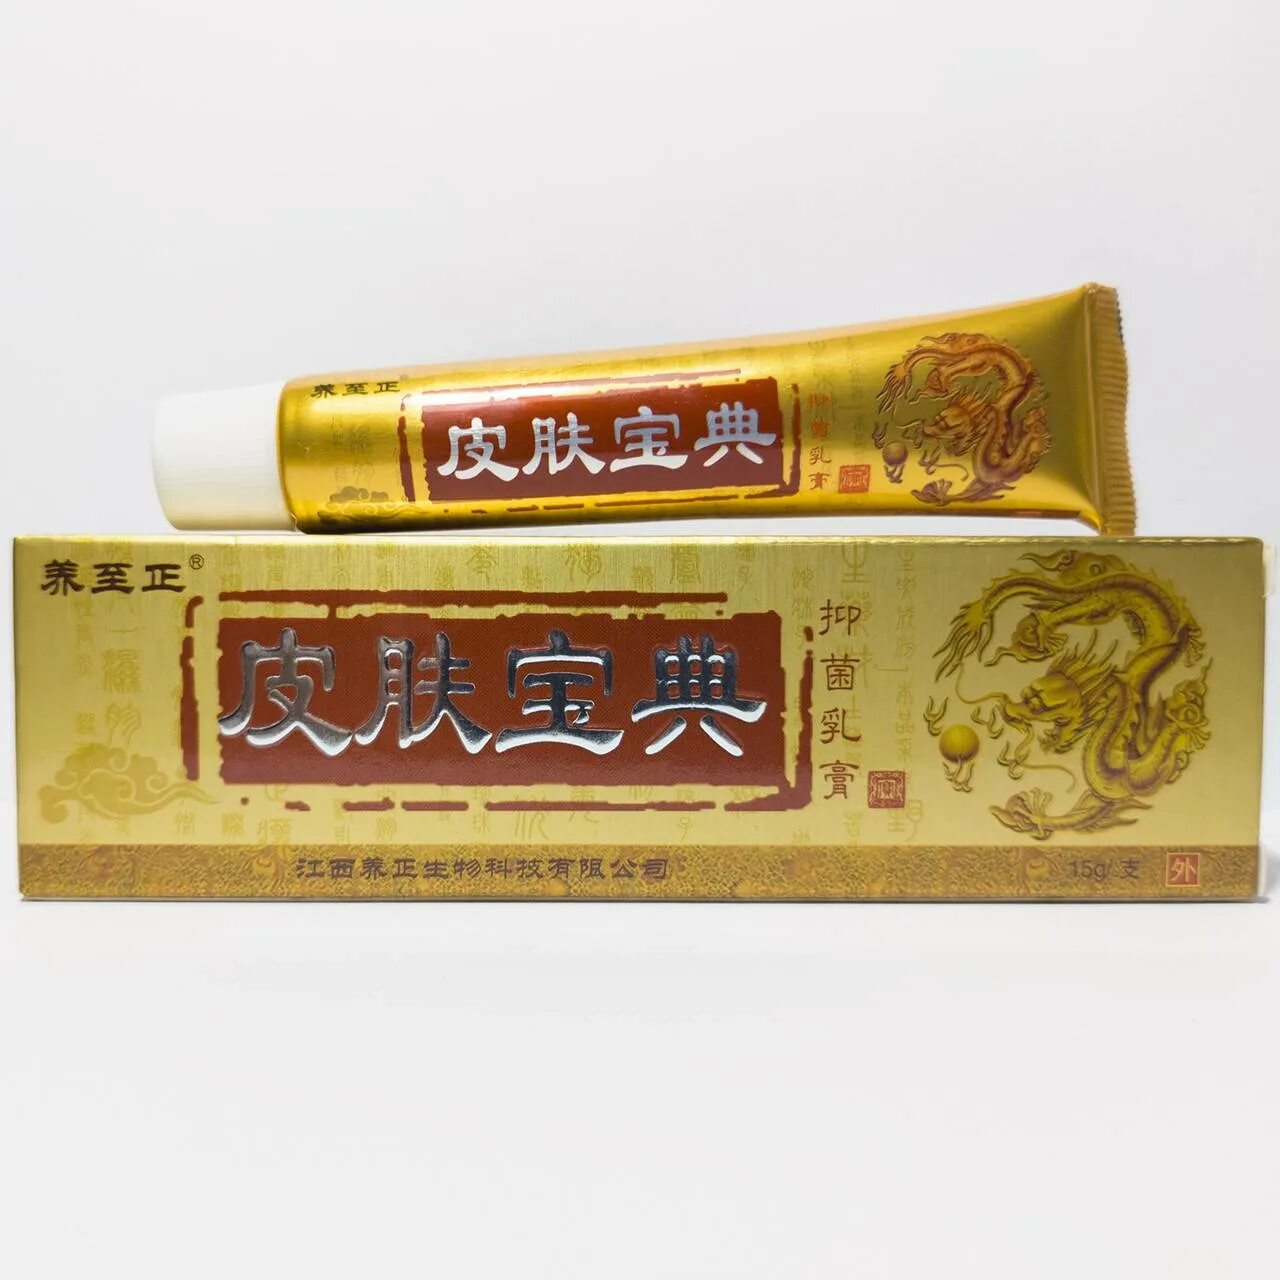 Мазь Иганержинг. Крем "китайский дракон" (Zhongguo Fu). Китайская мазь. Китайская мазь в золотом тюбике. Золотой тюбик